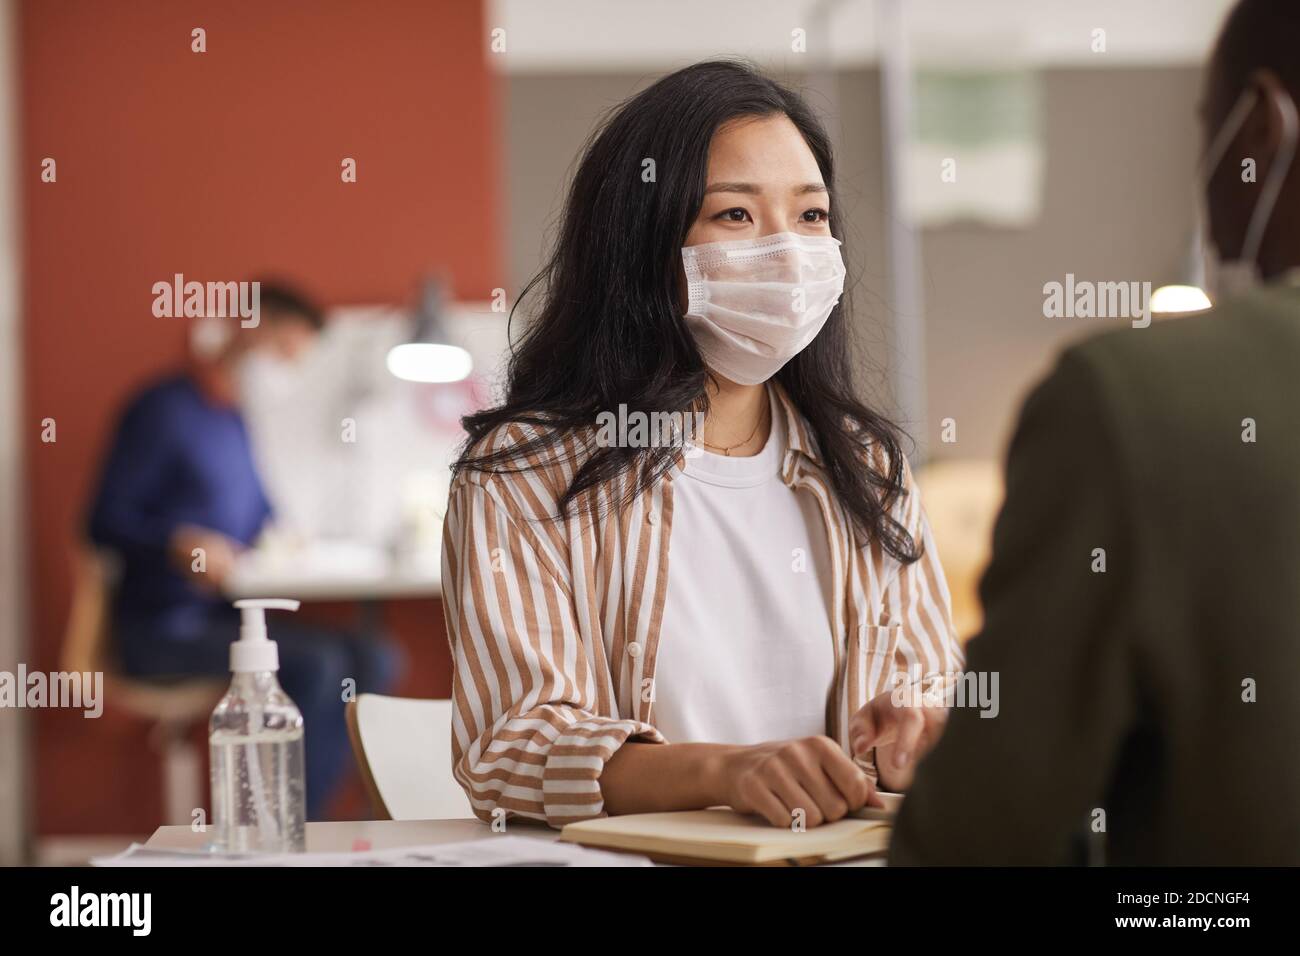 Portrait d'une jeune femme asiatique portant un masque lors d'une réunion d'affaires au bureau avec une bouteille d'assainisseur au premier plan, espace réservé aux copies Banque D'Images